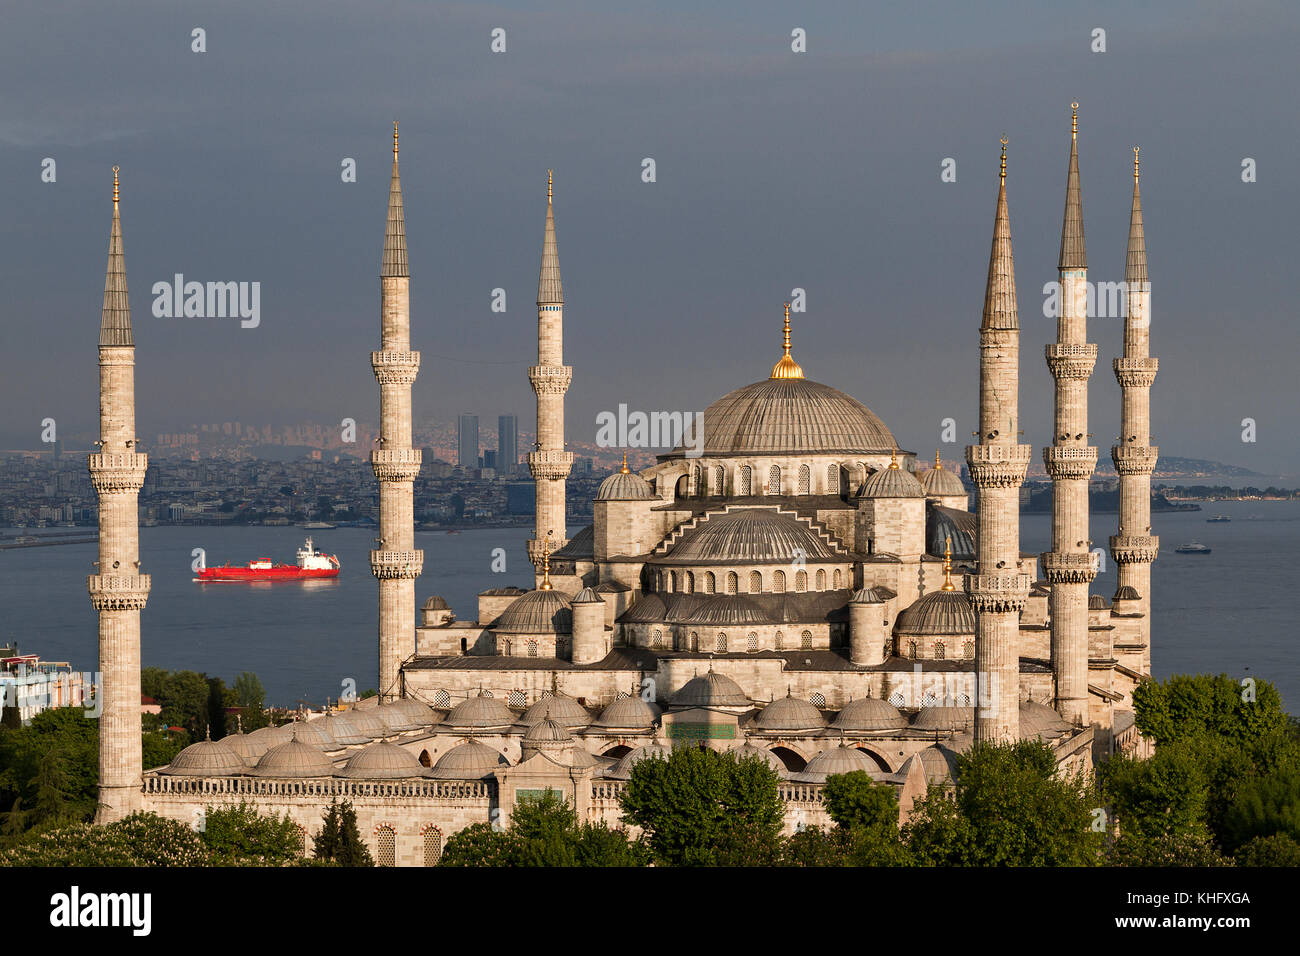 Mosquée bleue connu aussi sous le nom de Sultanahmet cami, à Istanbul, Turquie Banque D'Images